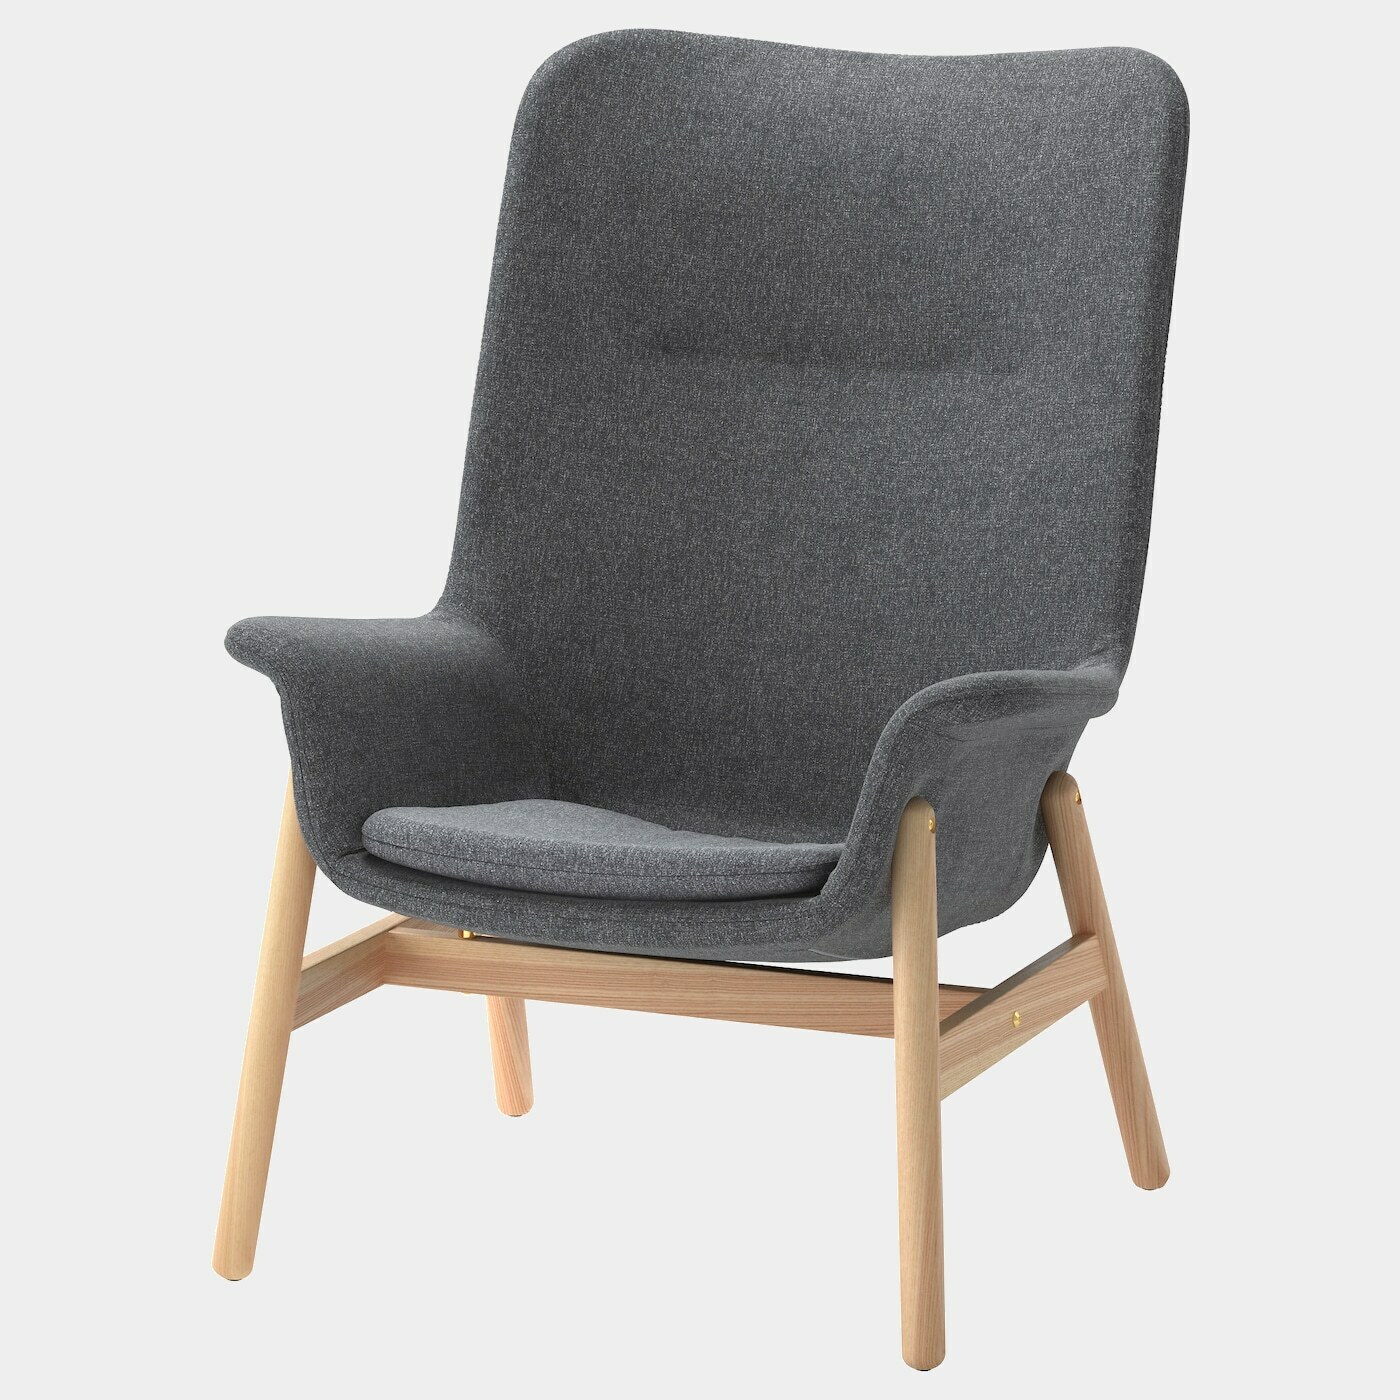 VEDBO Sessel mit hoher Rückenlehne  - Sessel & Récamieren - Möbel Ideen für dein Zuhause von Home Trends. Möbel Trends von Social Media Influencer für dein Skandi Zuhause.